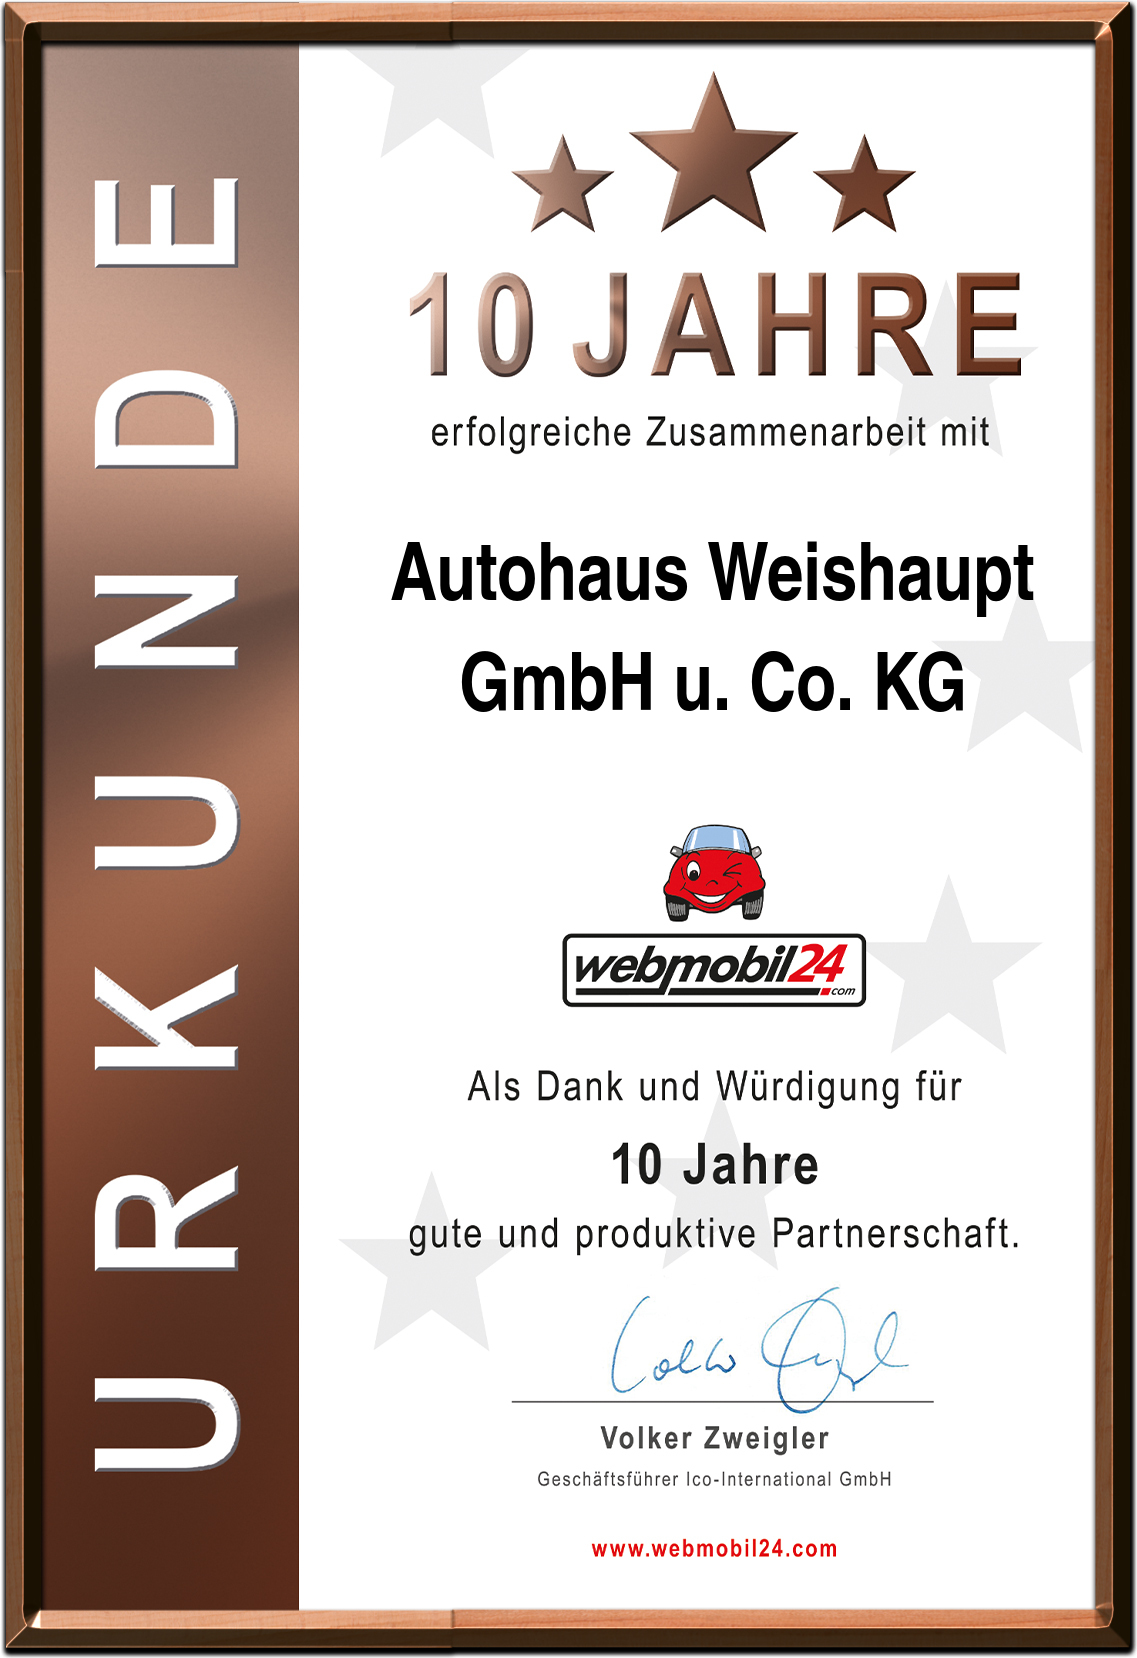 Autohaus Weishaupt
GmbH u. Co. KG